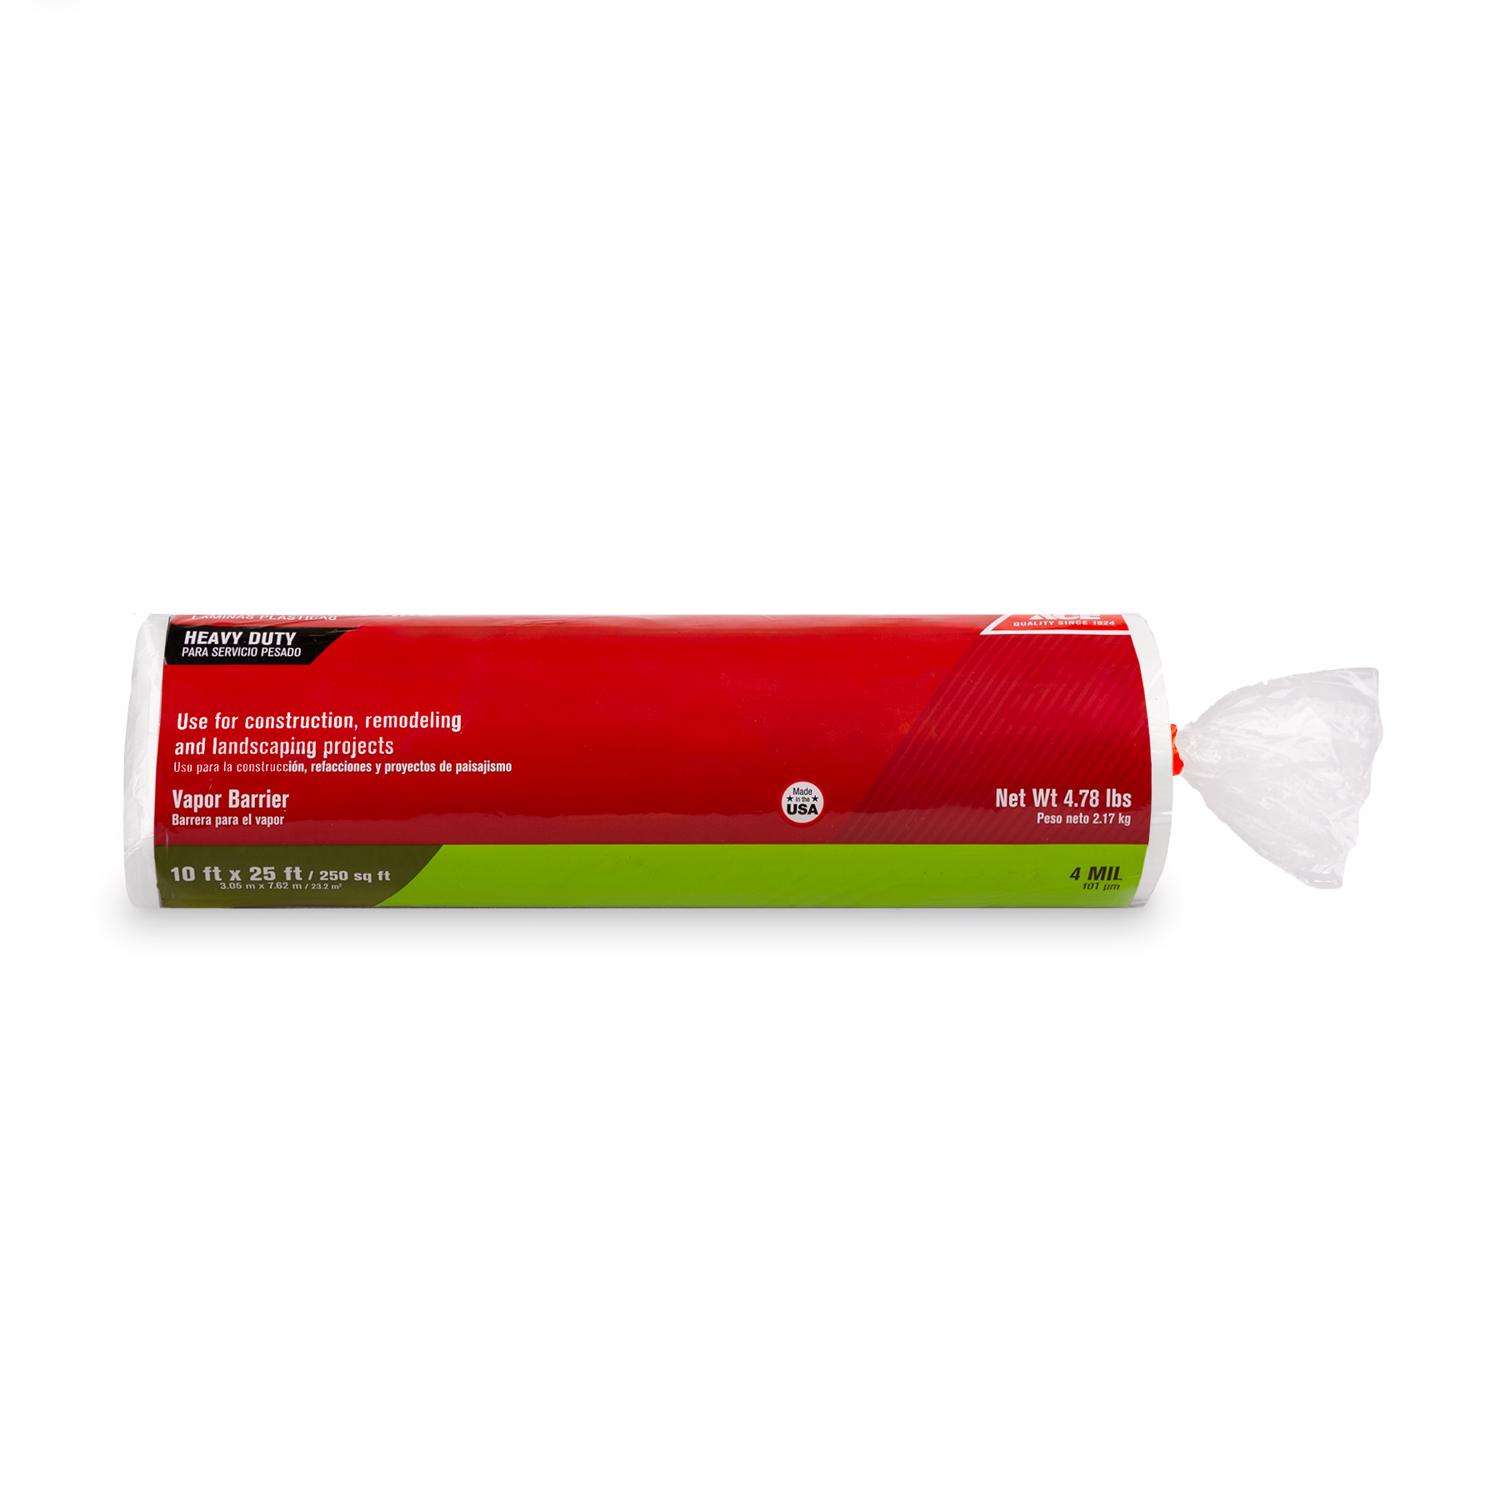 Mini Glue Sticks-FACTORY CASE, For Mini Hot Melt Glue Gun, 5/16 x 10  Sticks (25 KG)